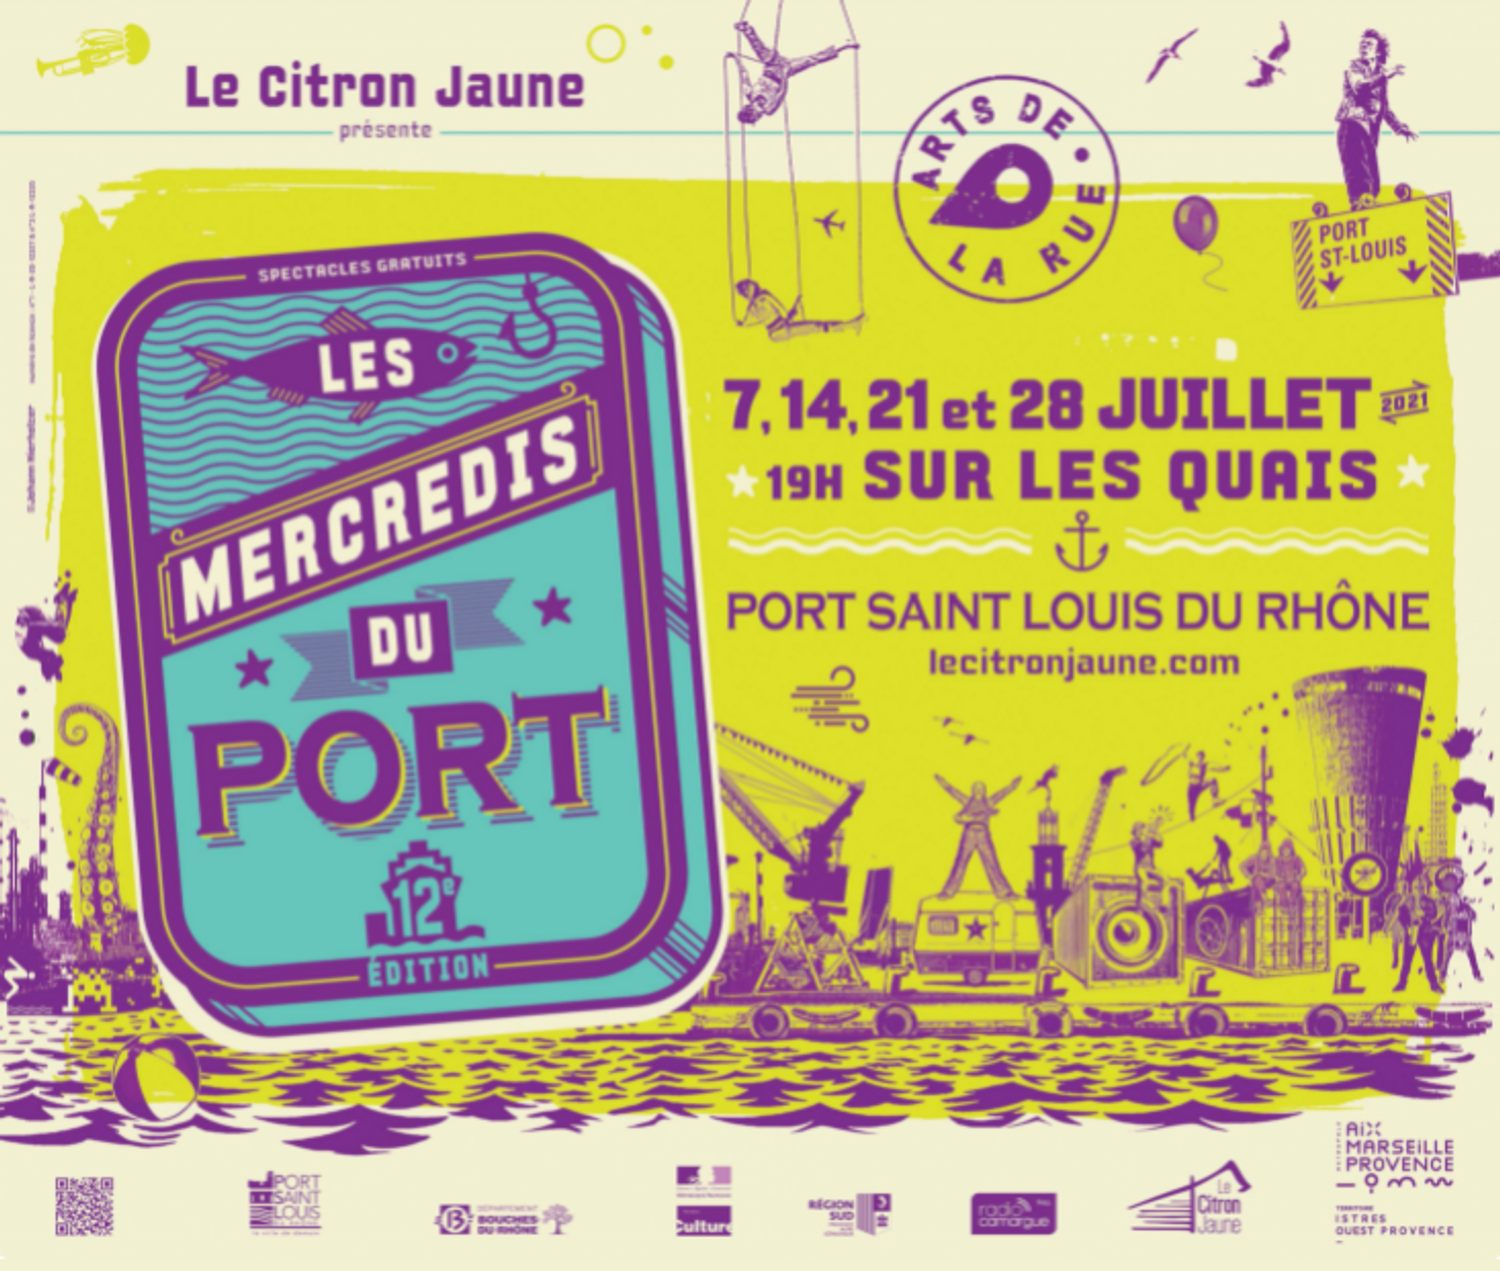 [ CULTURE/LOISIR ] Port St Louis du Rhône: Ne ratez pas les incontournables Mercredis du Port